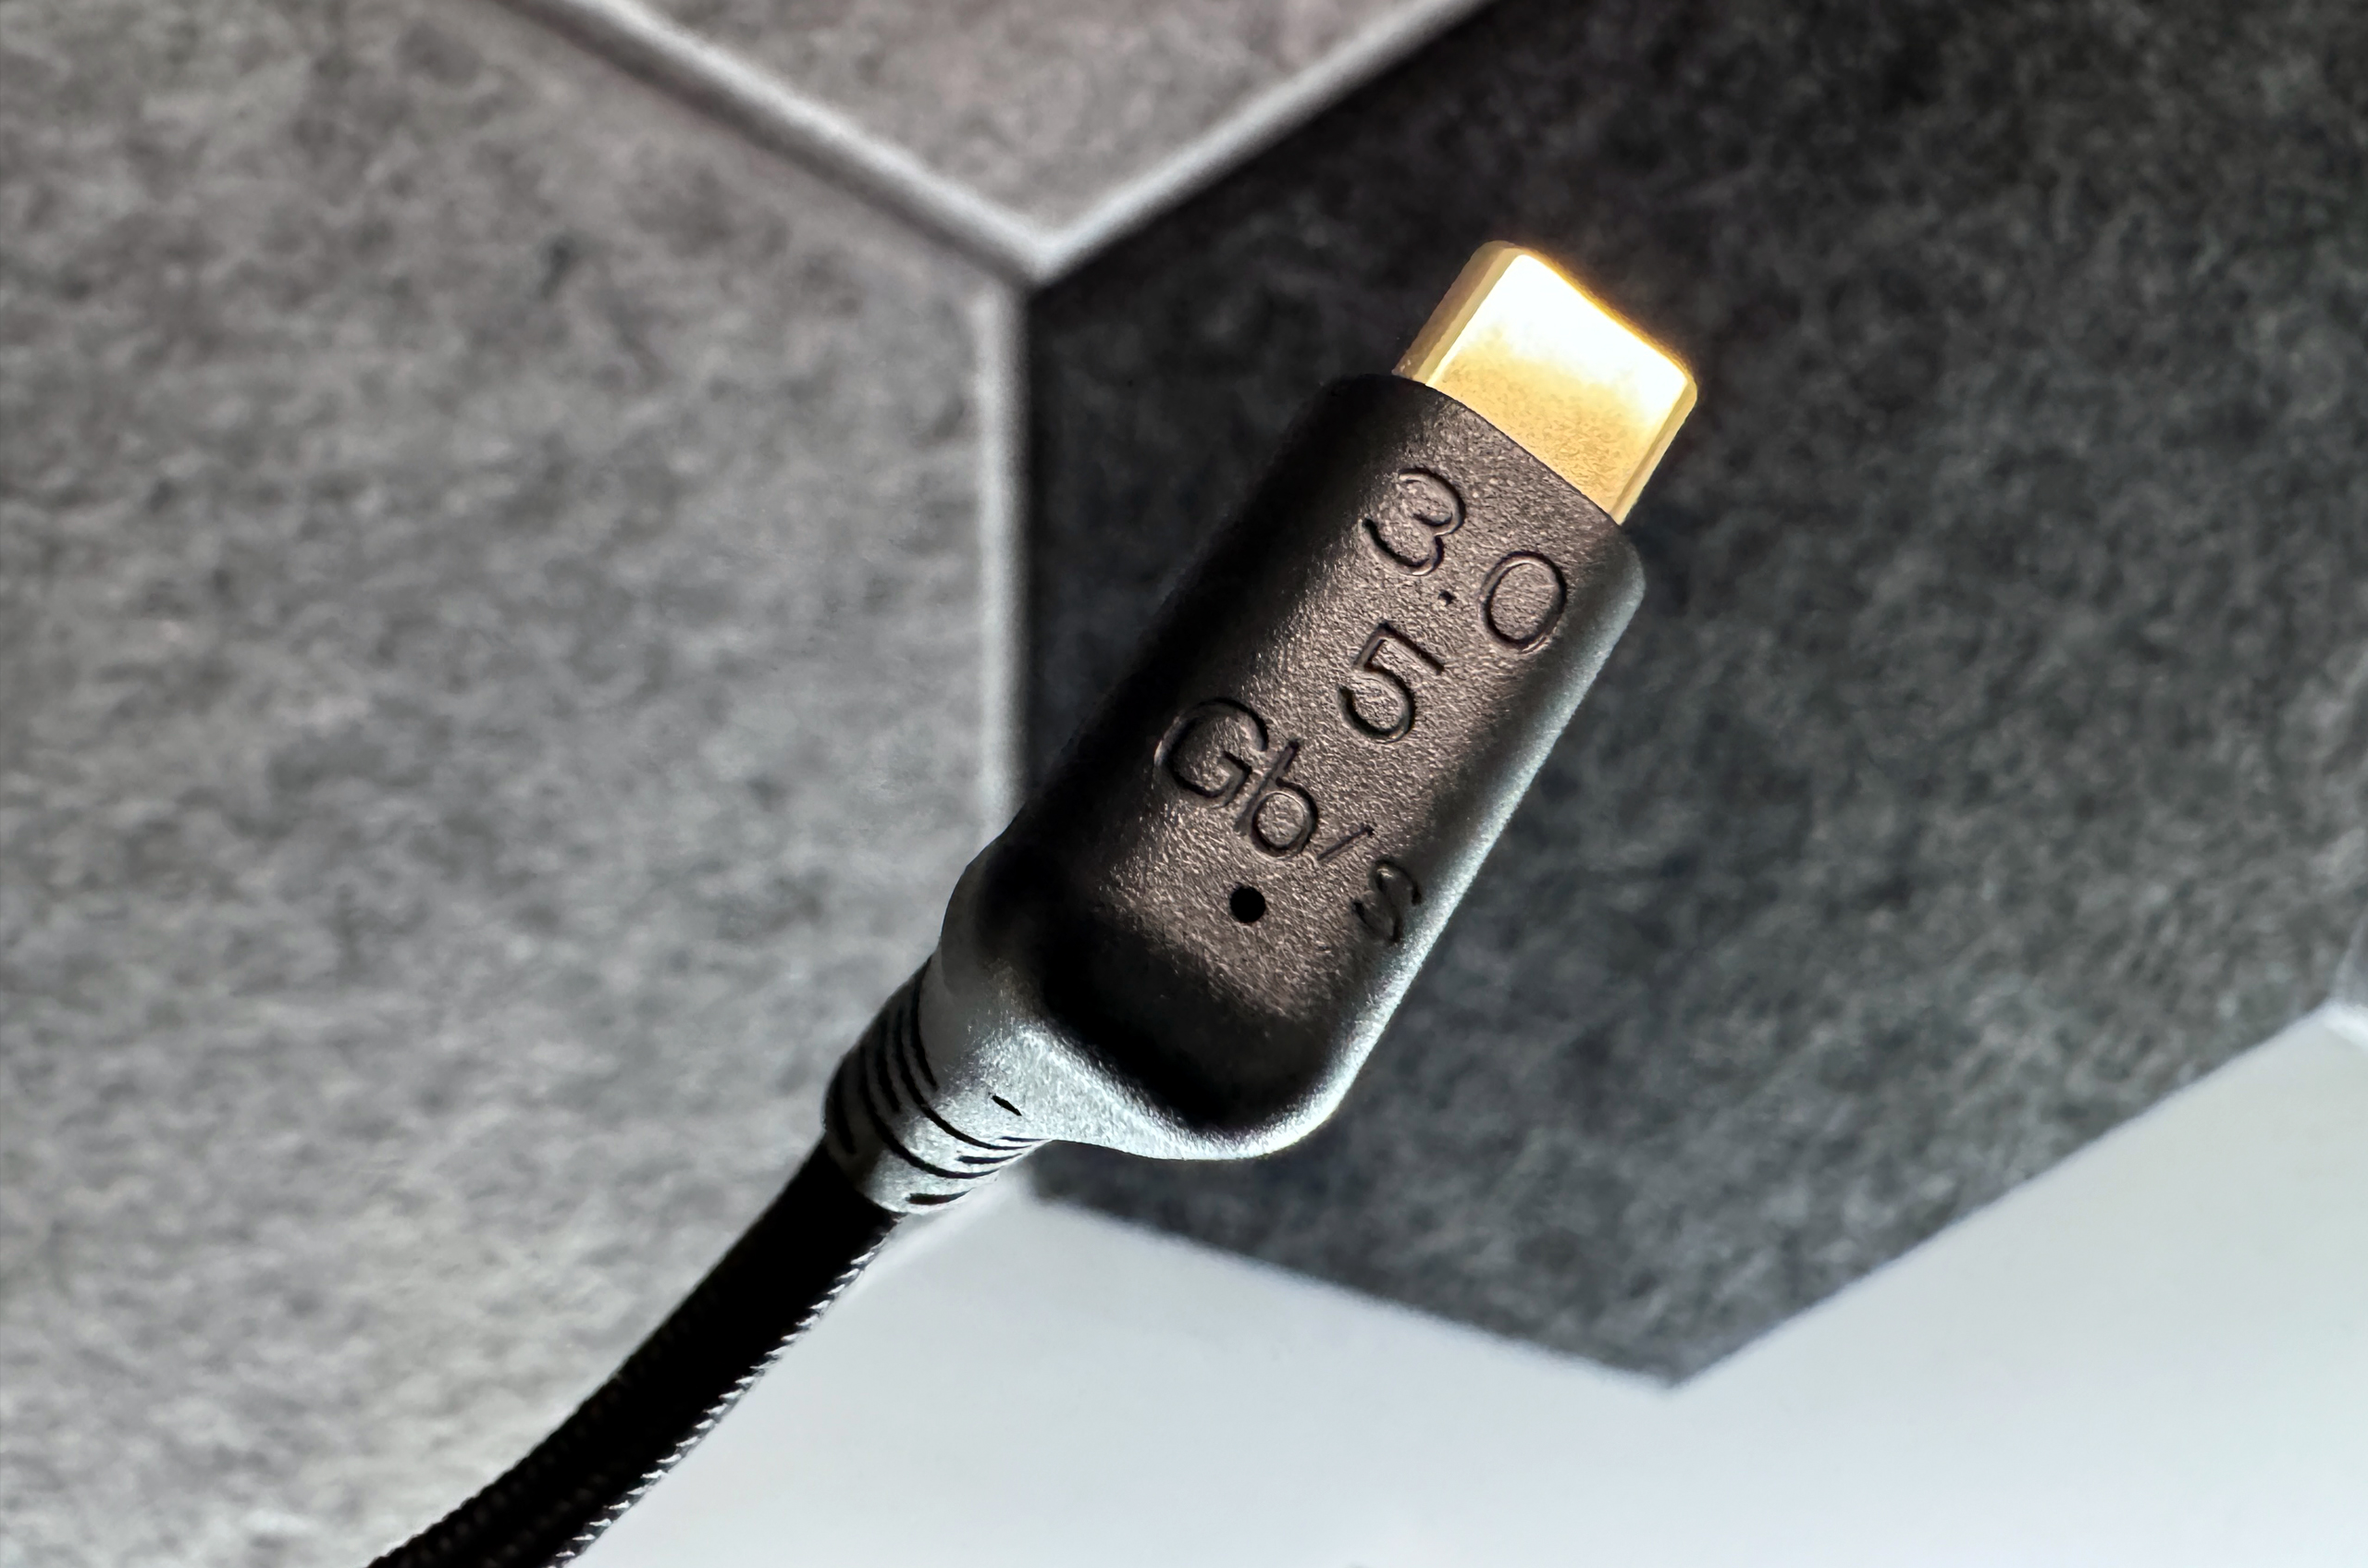 Elgato маркуватиме технічні характеристики прямо на коннекторах USB та HDMI кабелів